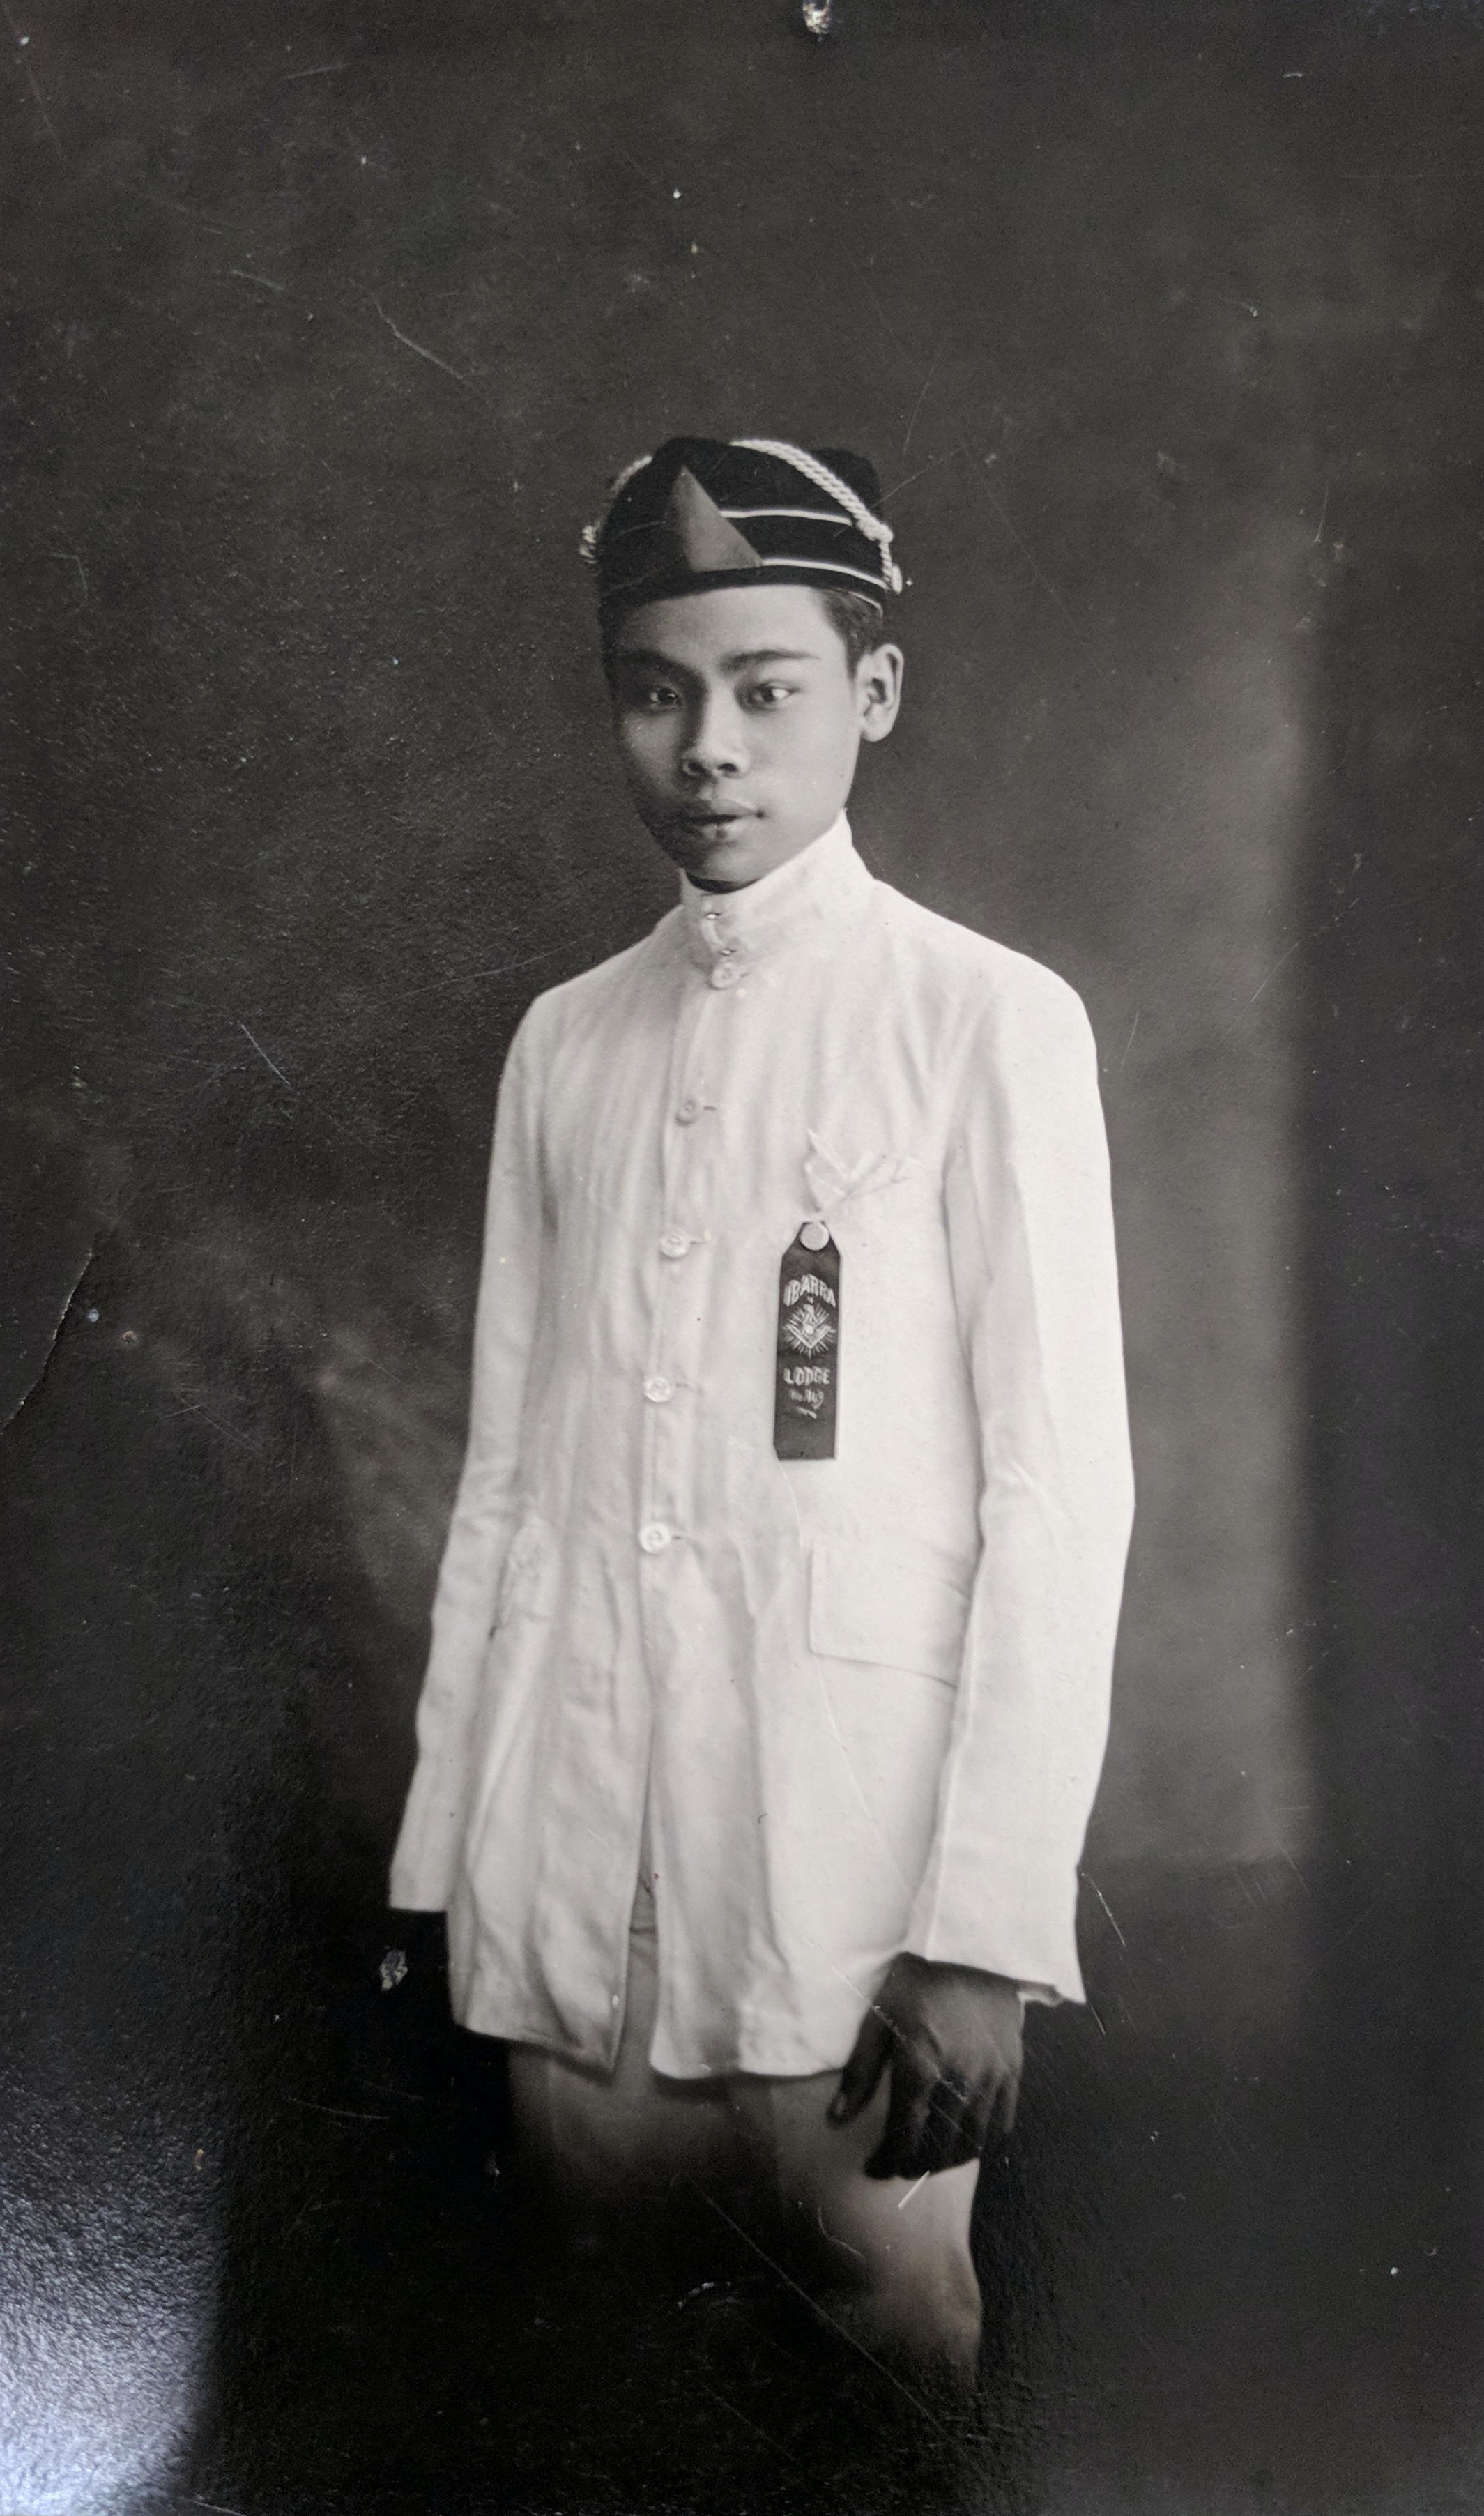 Transpacific Rizalistas: Portrait Photography and the Filipino 